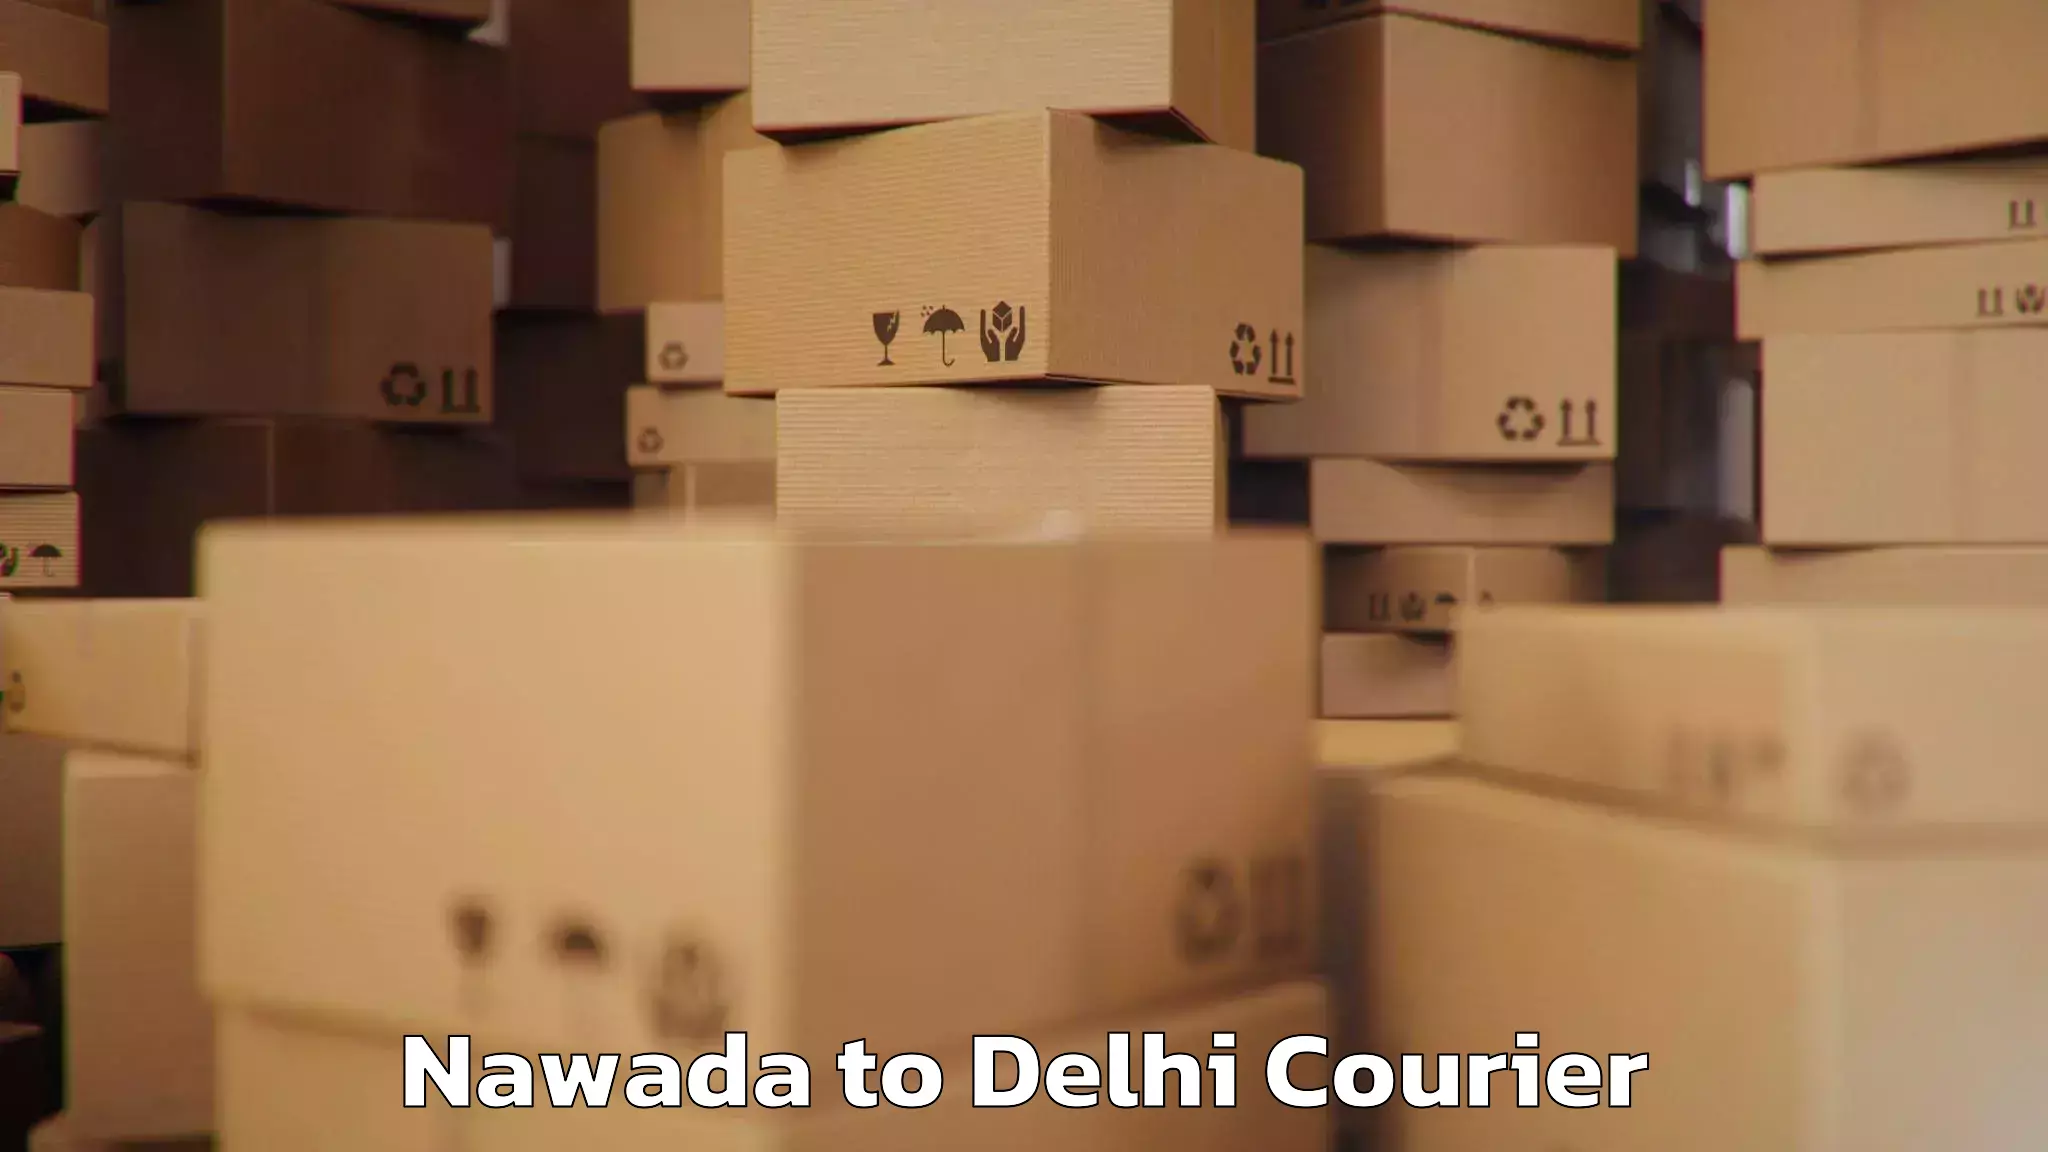 Electronic items luggage shipping Nawada to Jawaharlal Nehru University New Delhi